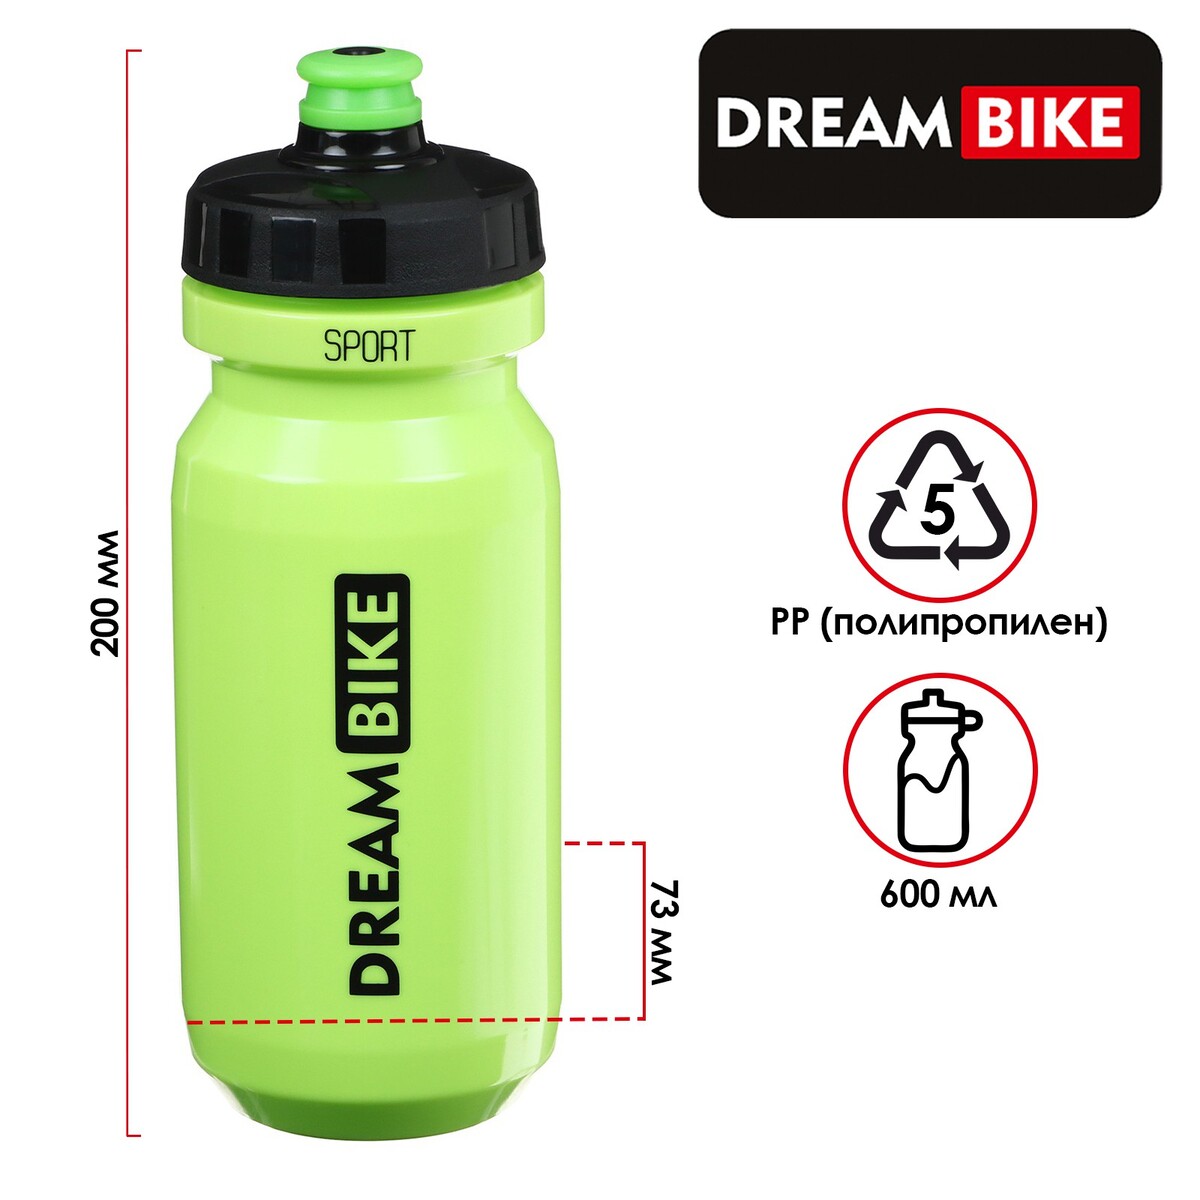 Велофляга dream bike 600 мл, цвет зелёный, Dream Bike